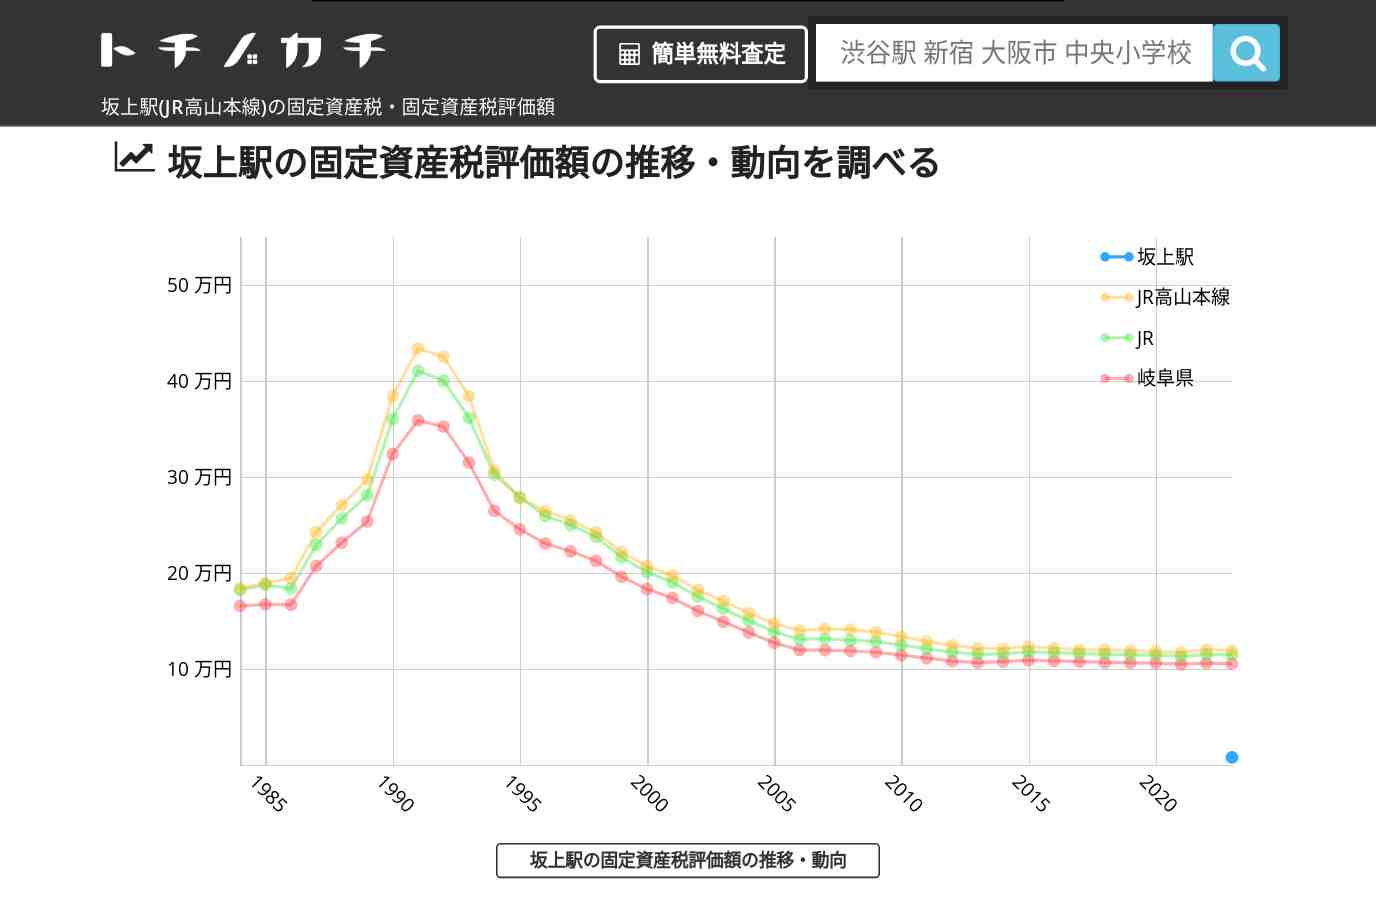 坂上駅(JR高山本線)の固定資産税・固定資産税評価額 | トチノカチ